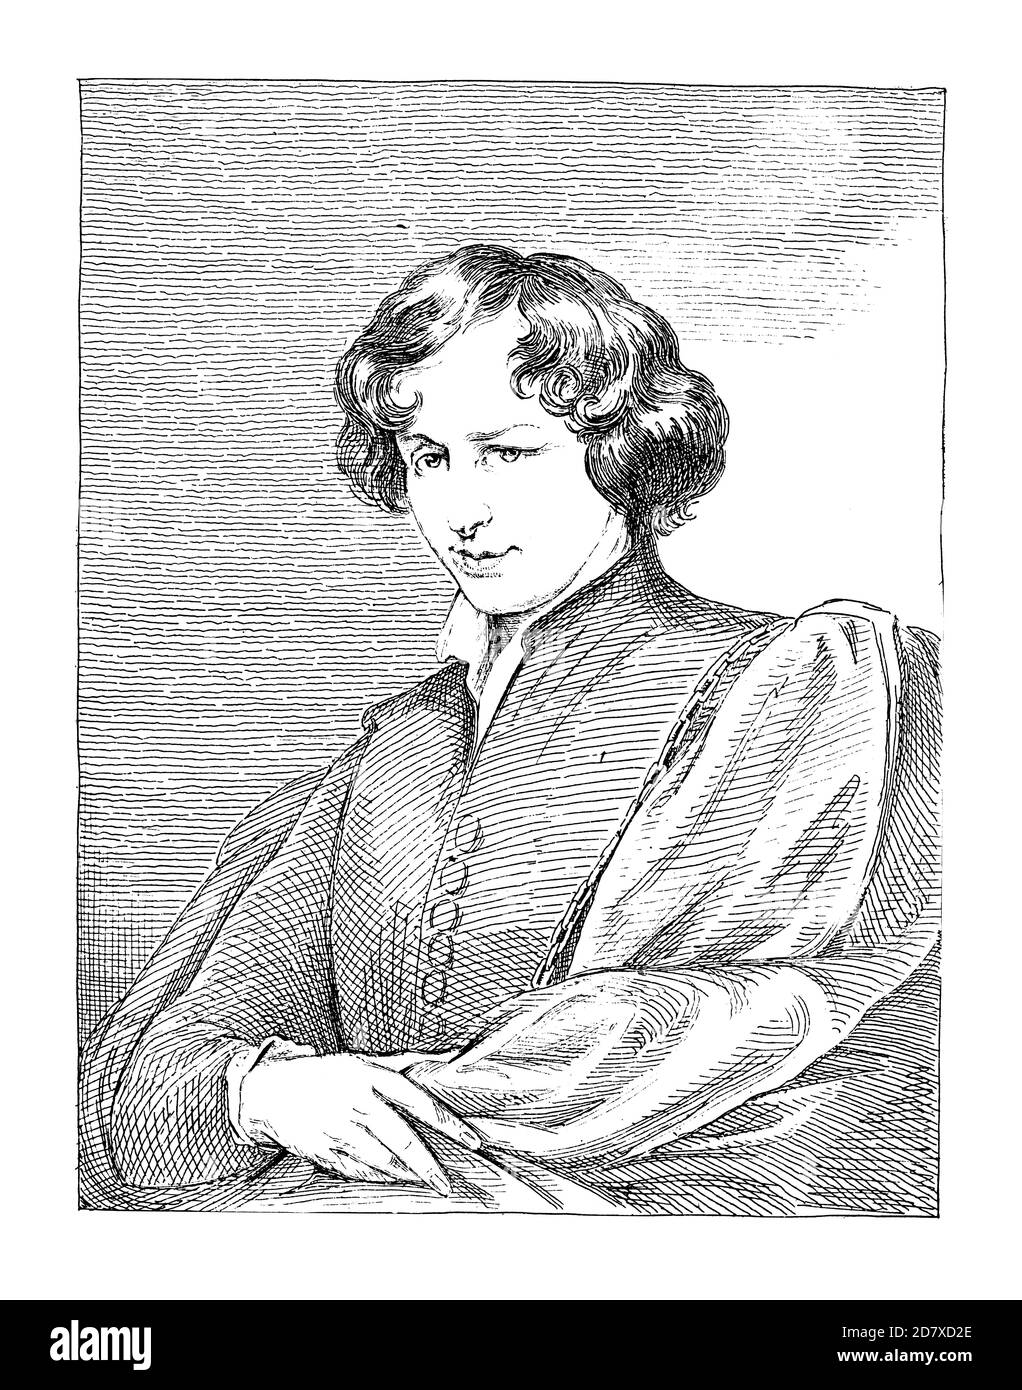 Antica illustrazione del XIX secolo raffigurante un autoritratto di Anthony van Dyck. Incisione pubblicata su Systematischer Bilder Atlas - Bauwesen, Ikonogra Foto Stock